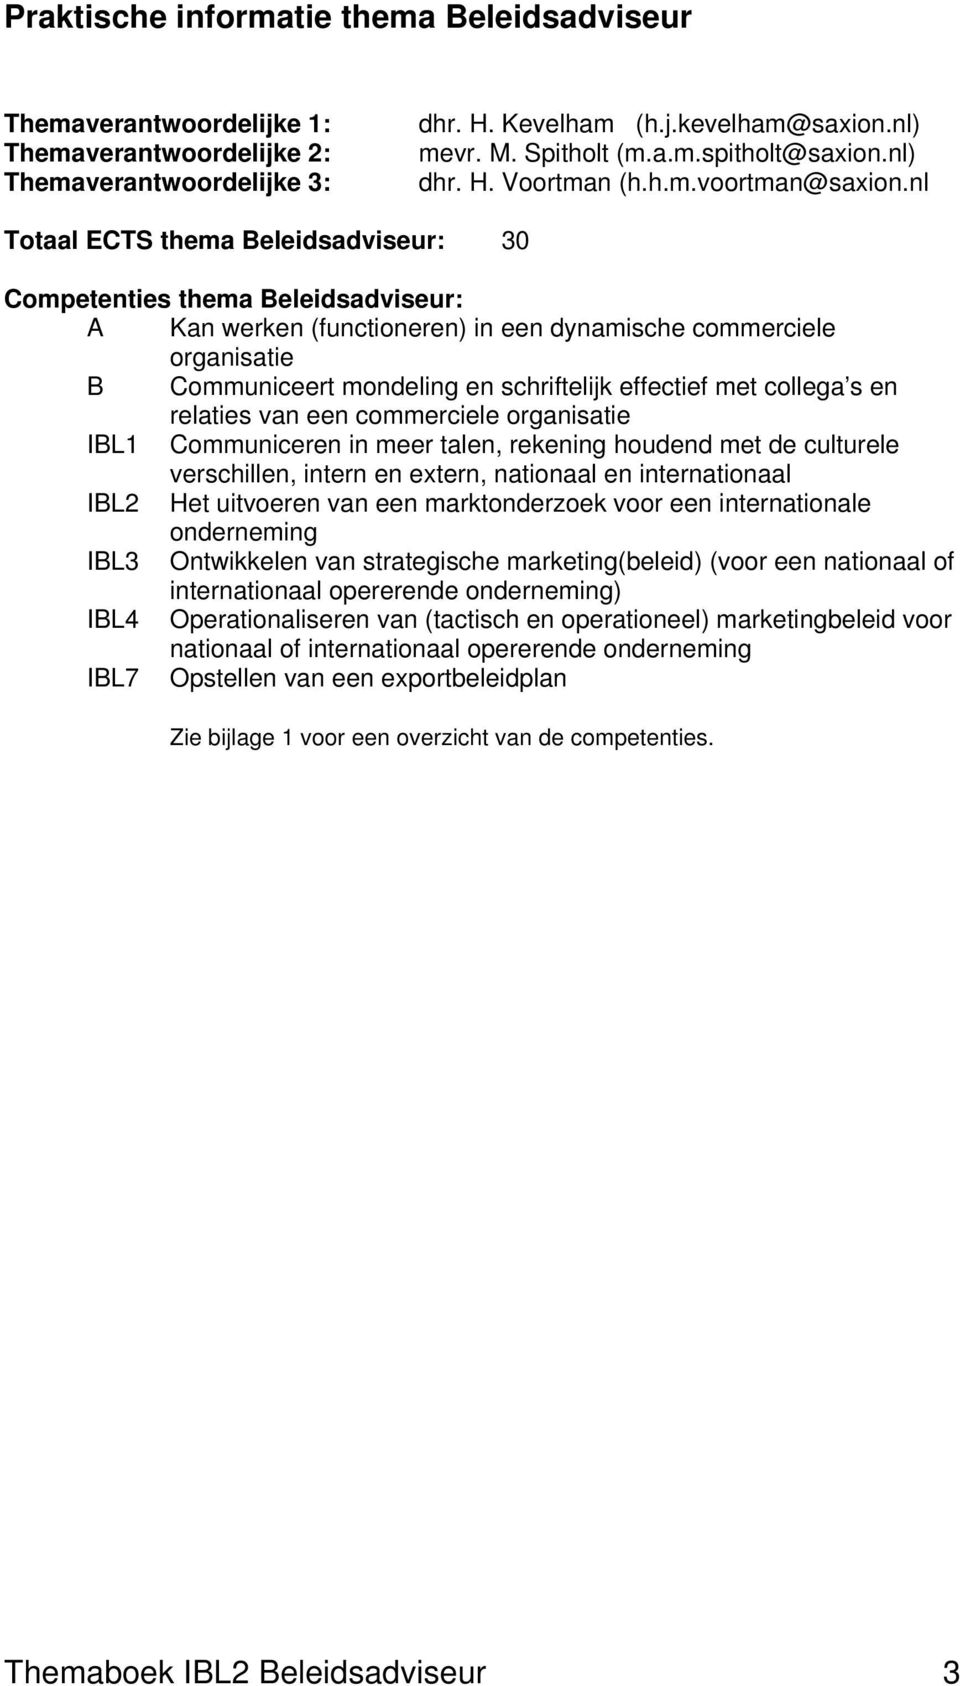 nl Totaal ECTS thema Beleidsadviseur: 30 Competenties thema Beleidsadviseur: A Kan werken (functioneren) in een dynamische commerciele organisatie B Communiceert mondeling en schriftelijk effectief